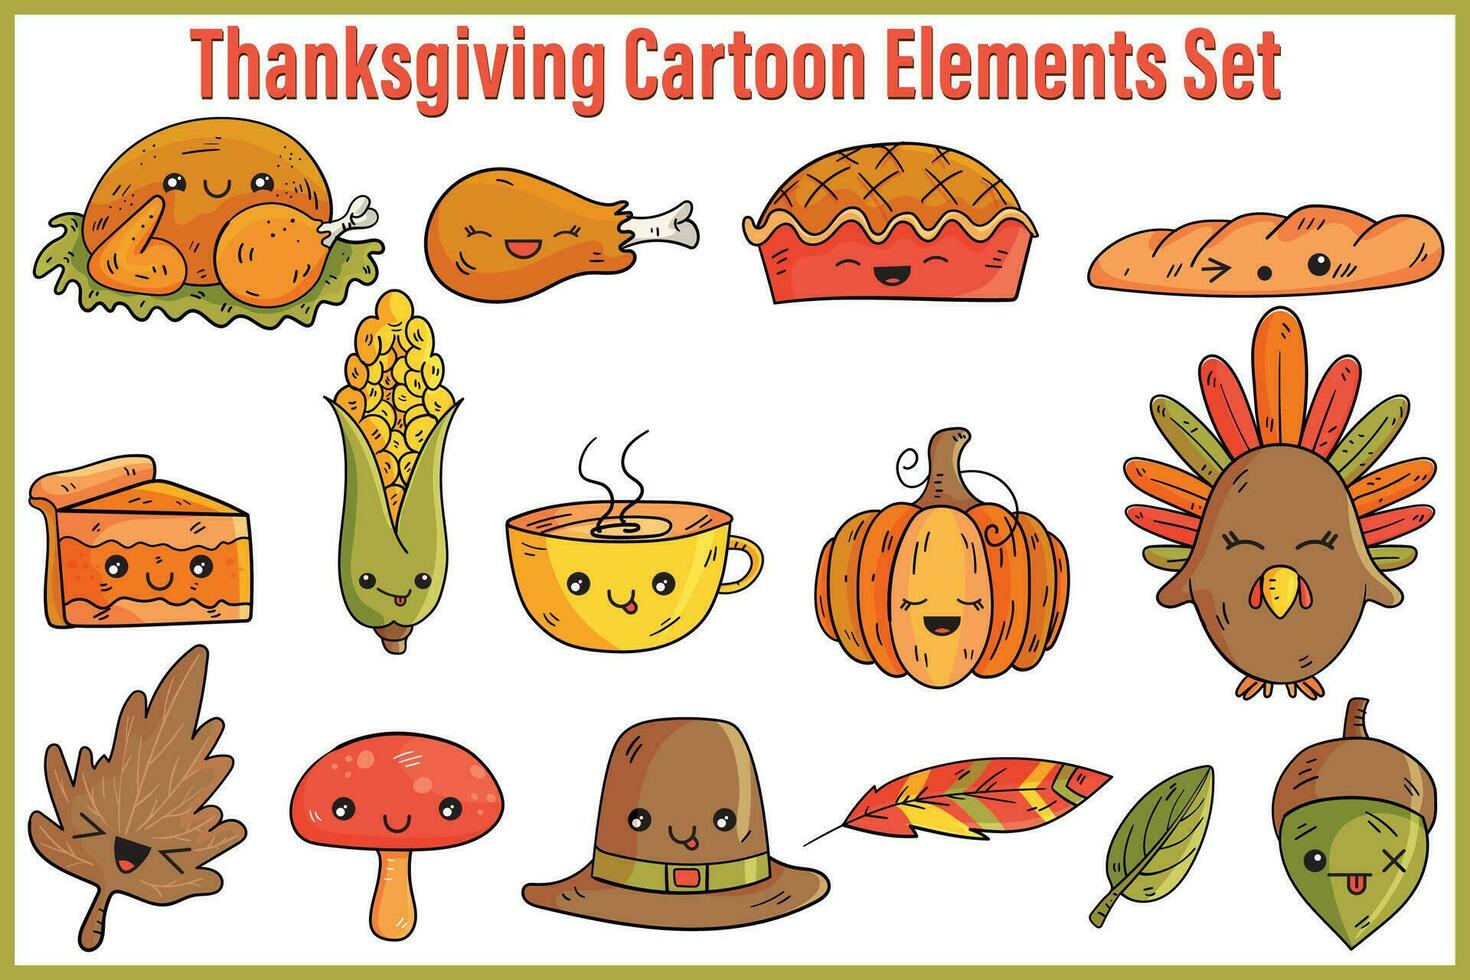 Thanksgiving cartoon elements set, mushroom, bread, leaf, acorn, turkey, drum, stick, pie, corn, pumpkin, feather, hat vector